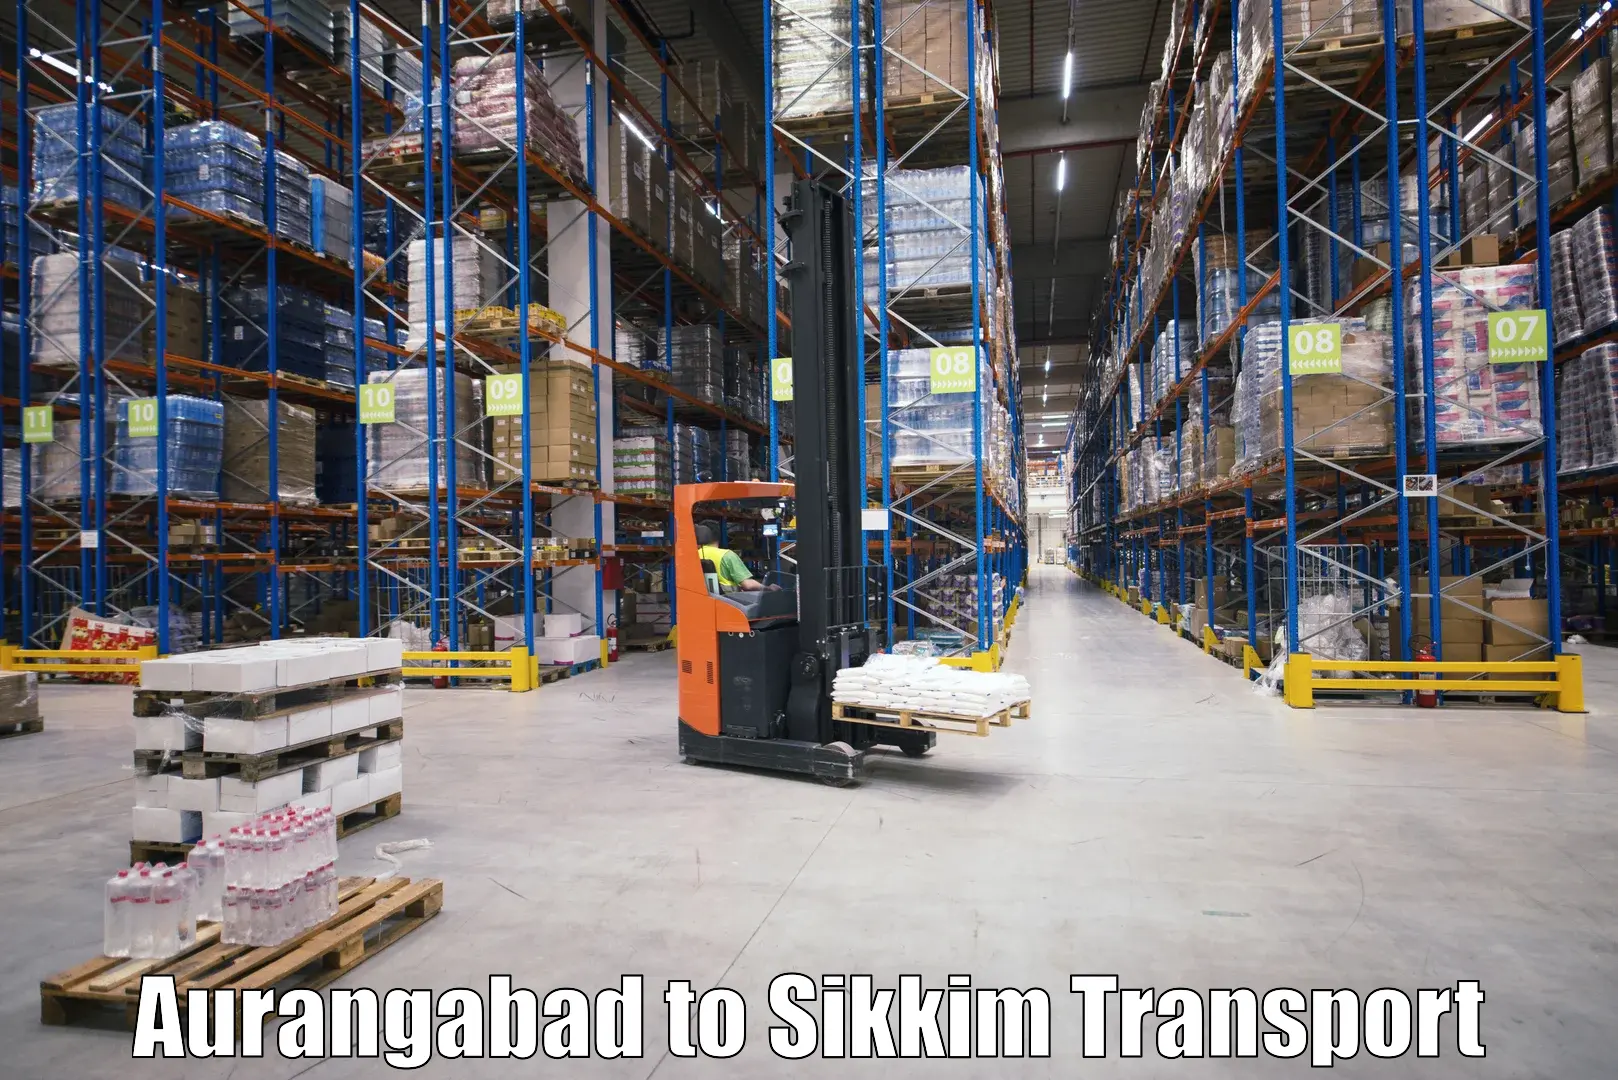 International cargo transportation services Aurangabad to Namchi